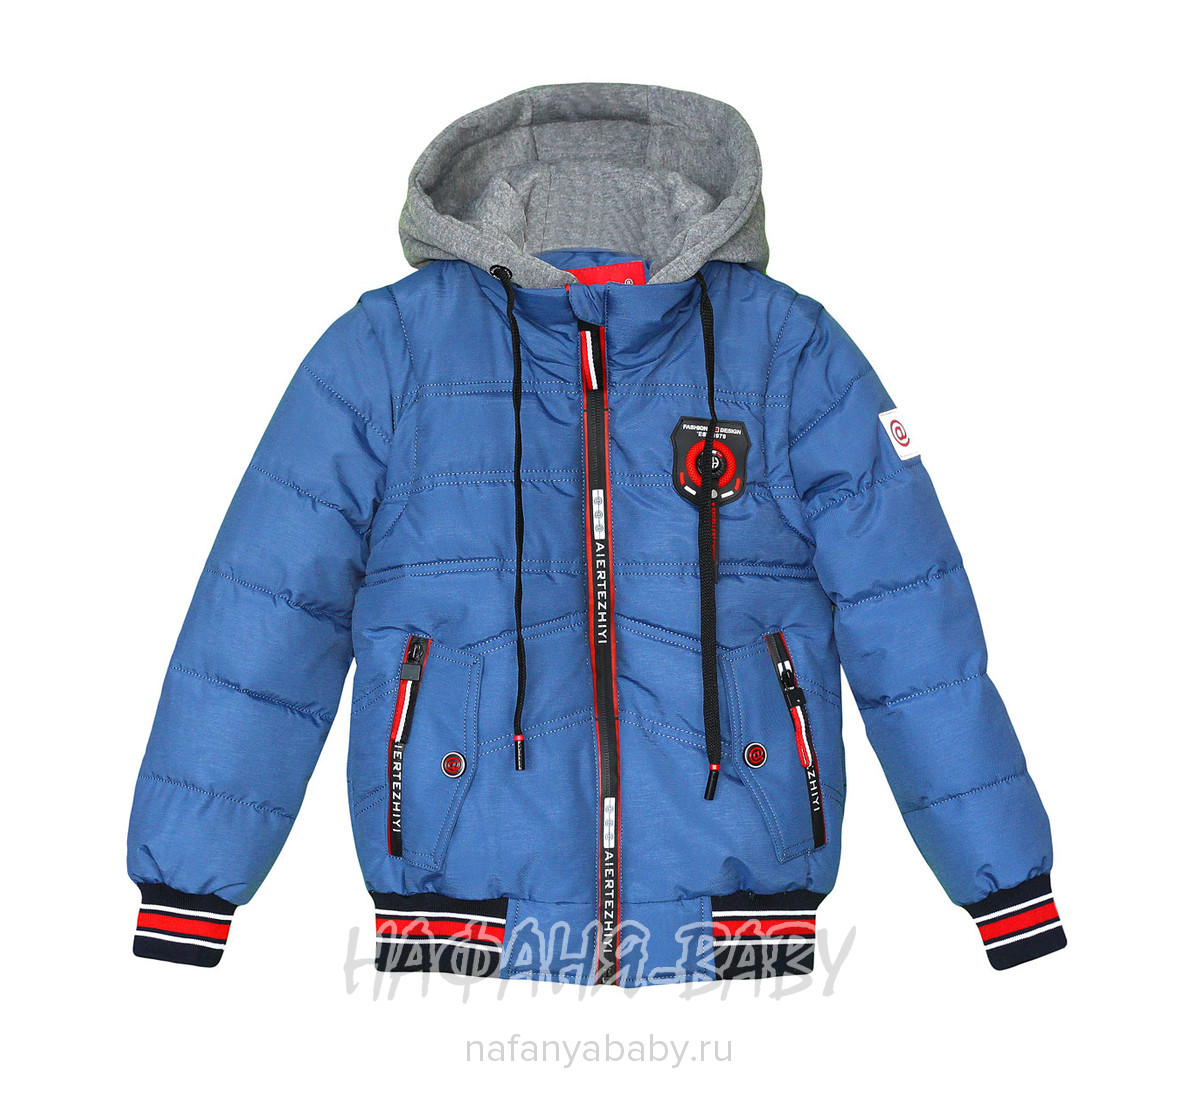 Детская демисезонная куртка AET арт: 7112, 5-9 лет, 1-4 года, оптом Китай (Пекин)